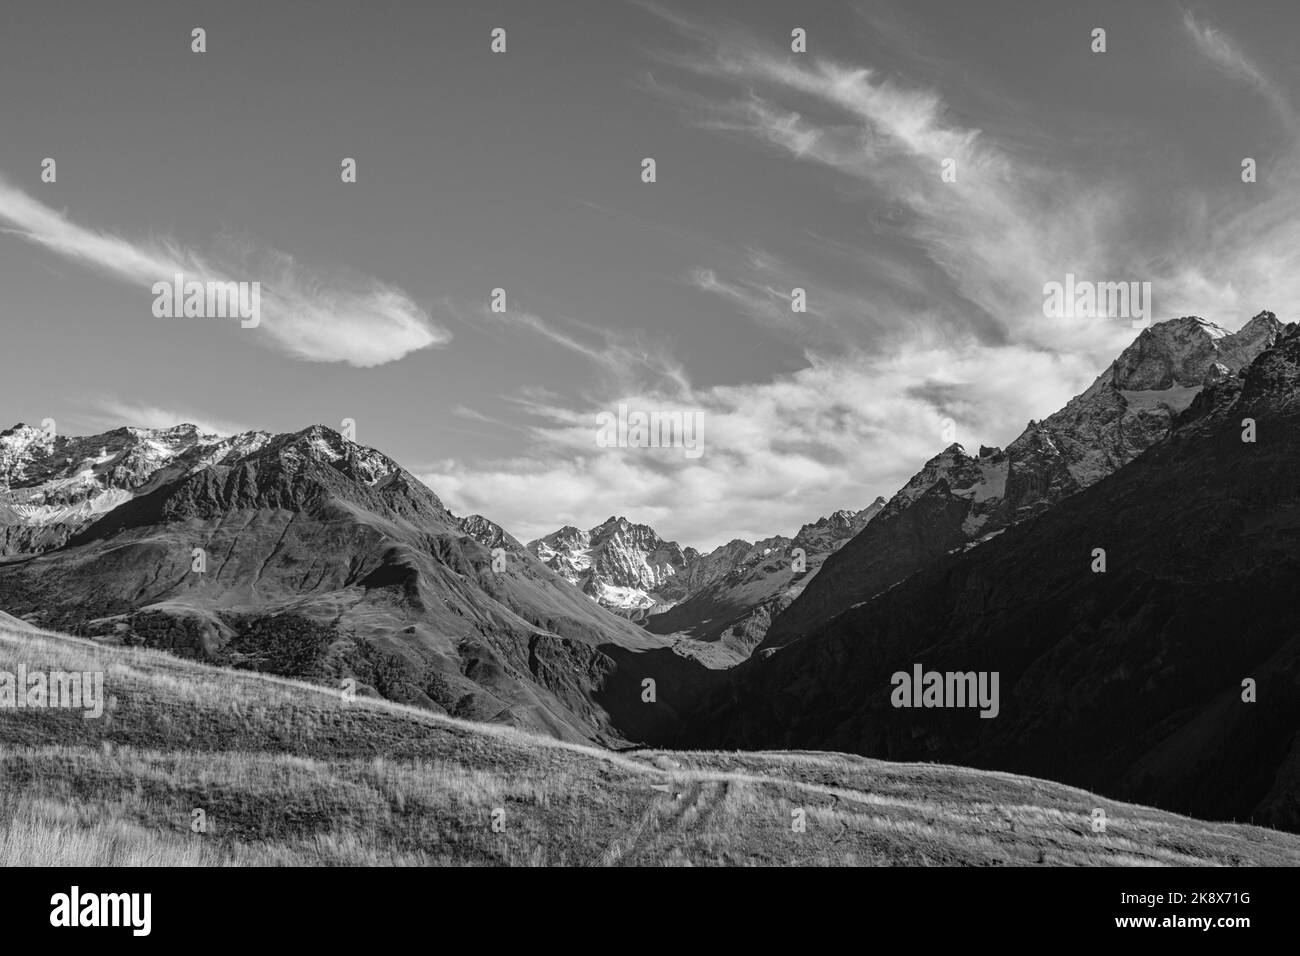 Il picco delle Alpi è previsto all'inizio di ottobre. neve in cima alla montagna. Foto del paesaggio montano. Regione alpina Foto Stock